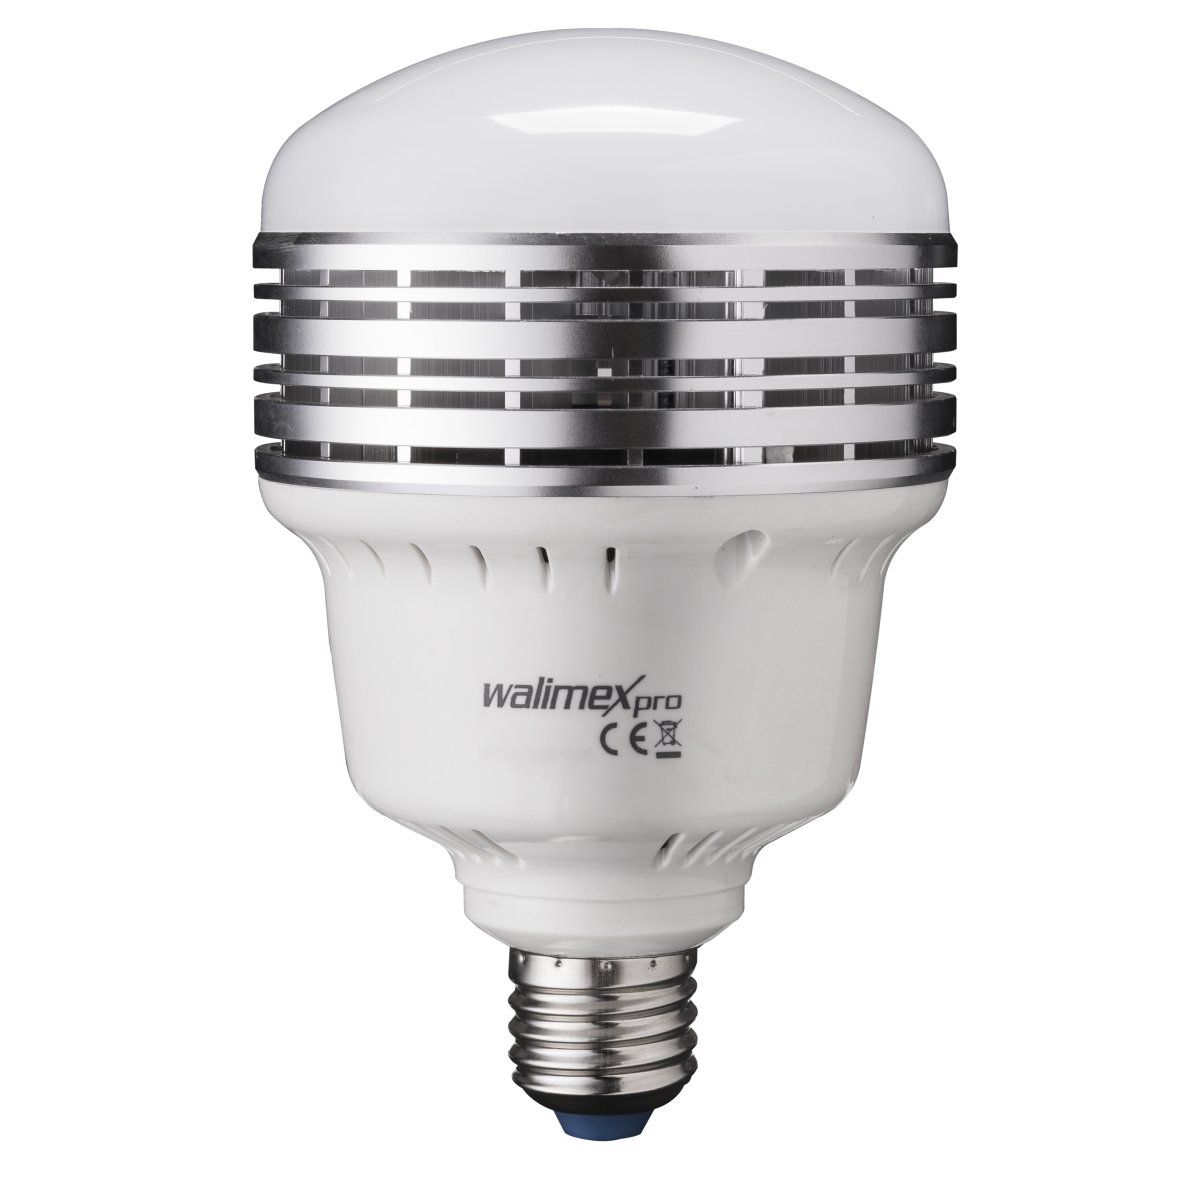 Walimex Pro LED Lampe LB-25-L für Fotoaufnahmen (E27 Sockel, 25 Watt, 2500 Lumen, 5500K, entspricht Tageslicht, flackerfrei)